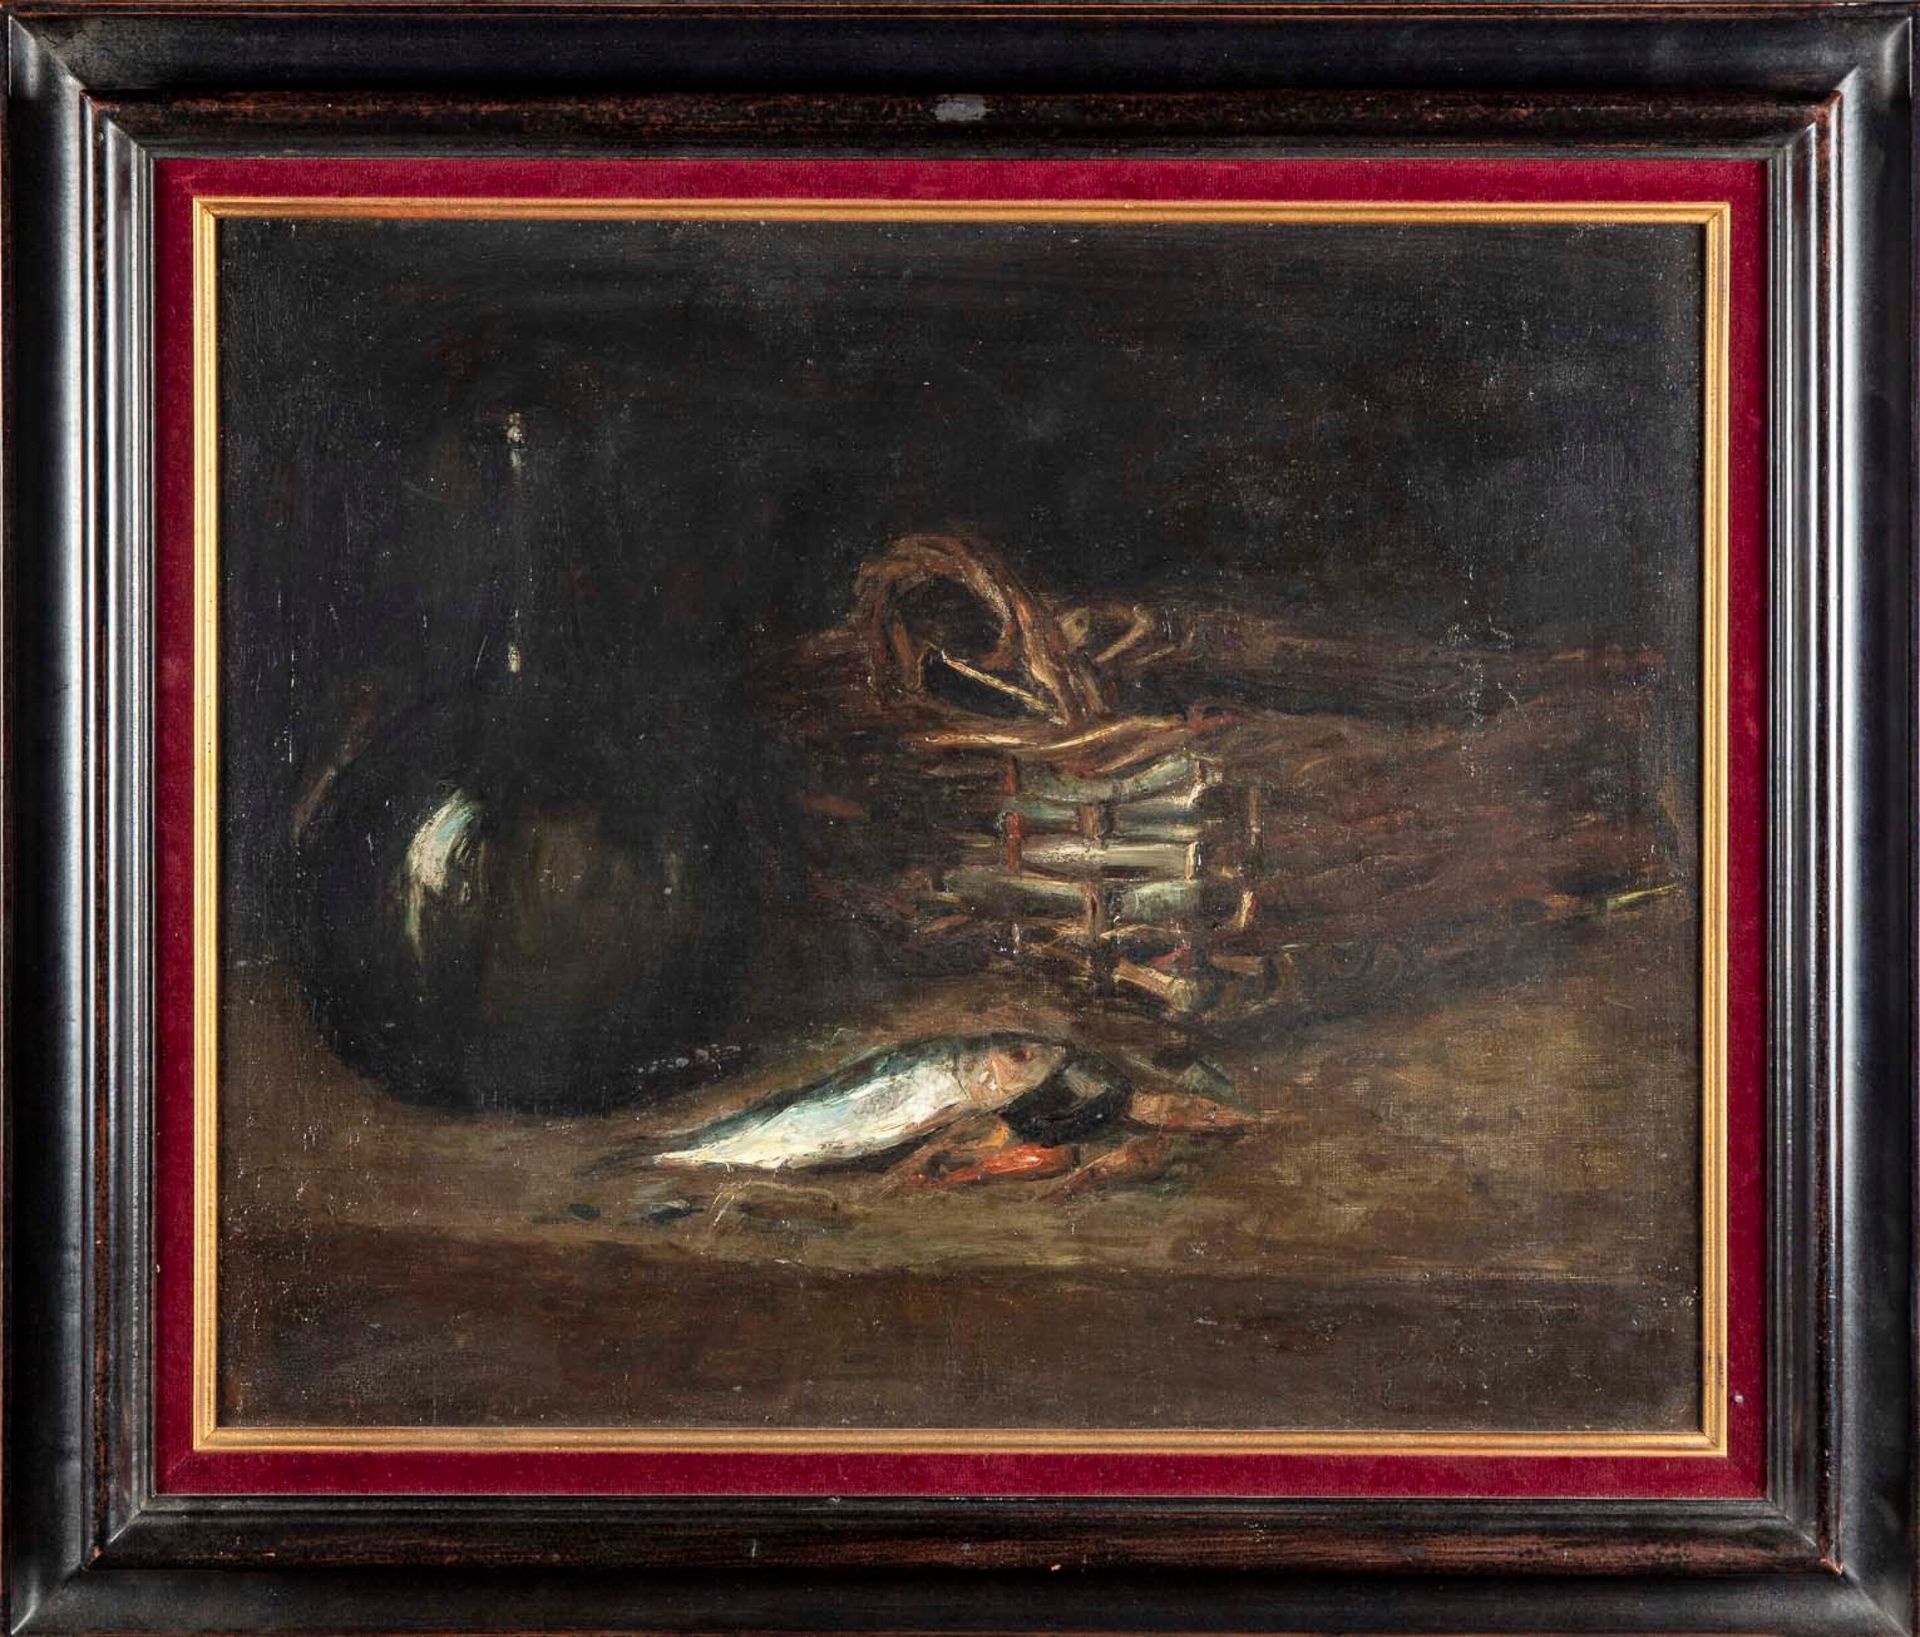 GERMAIN RIBAUT Germain RIBAUT (1845-1893)

Stilleben mit Sardinen

Öl auf Leinwa&hellip;